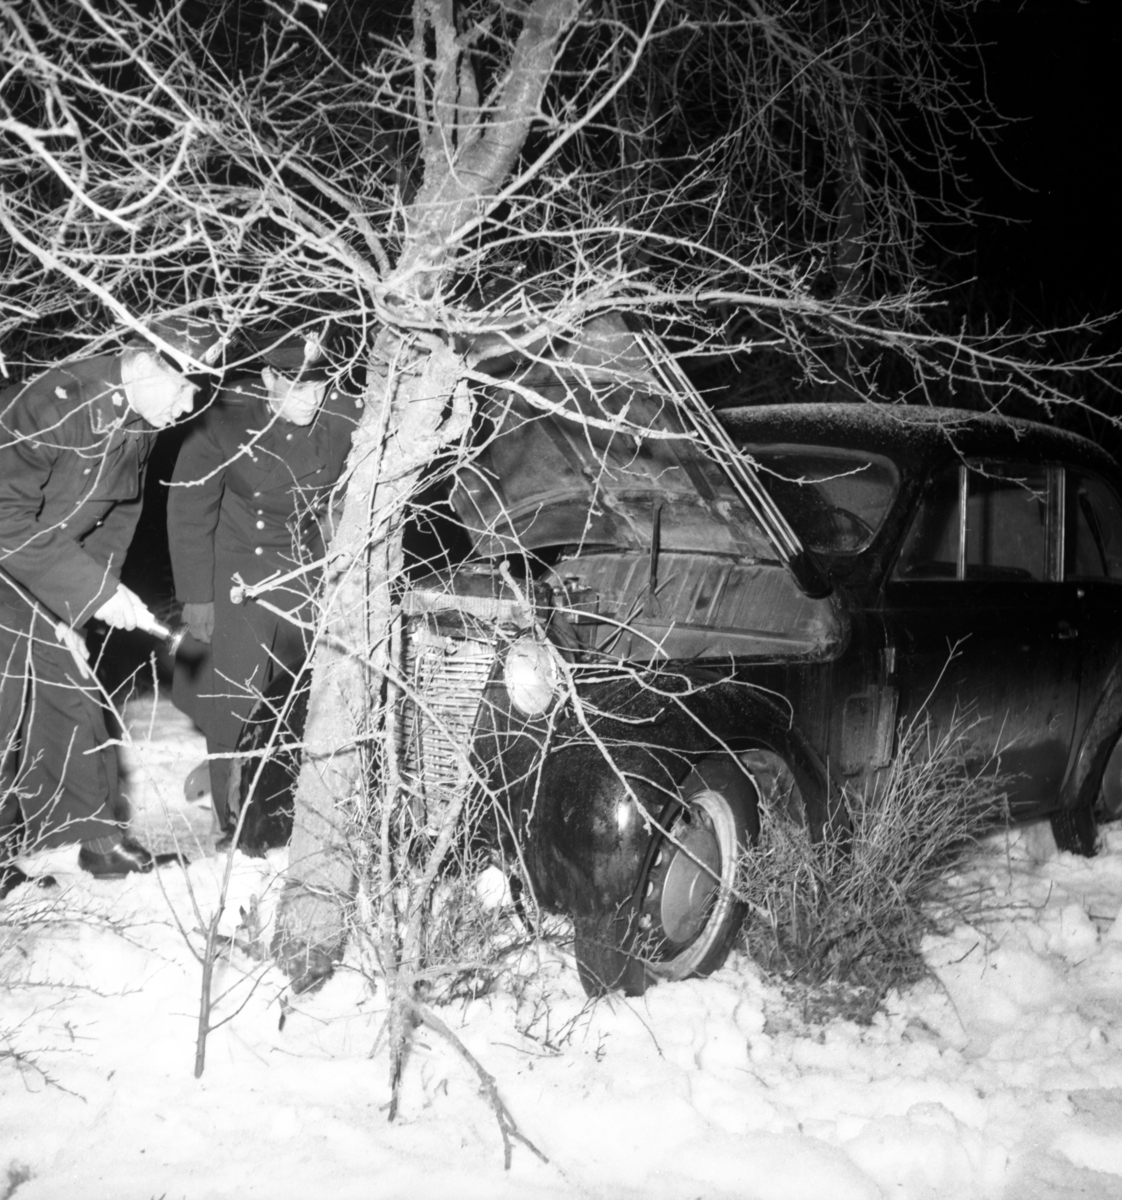 Efter att ha blivit jagade av poliser i radiobil, har ett par biltjuvar slutligen hejdats i Hackefors av ett träd.
Olycka. Singelolycka.